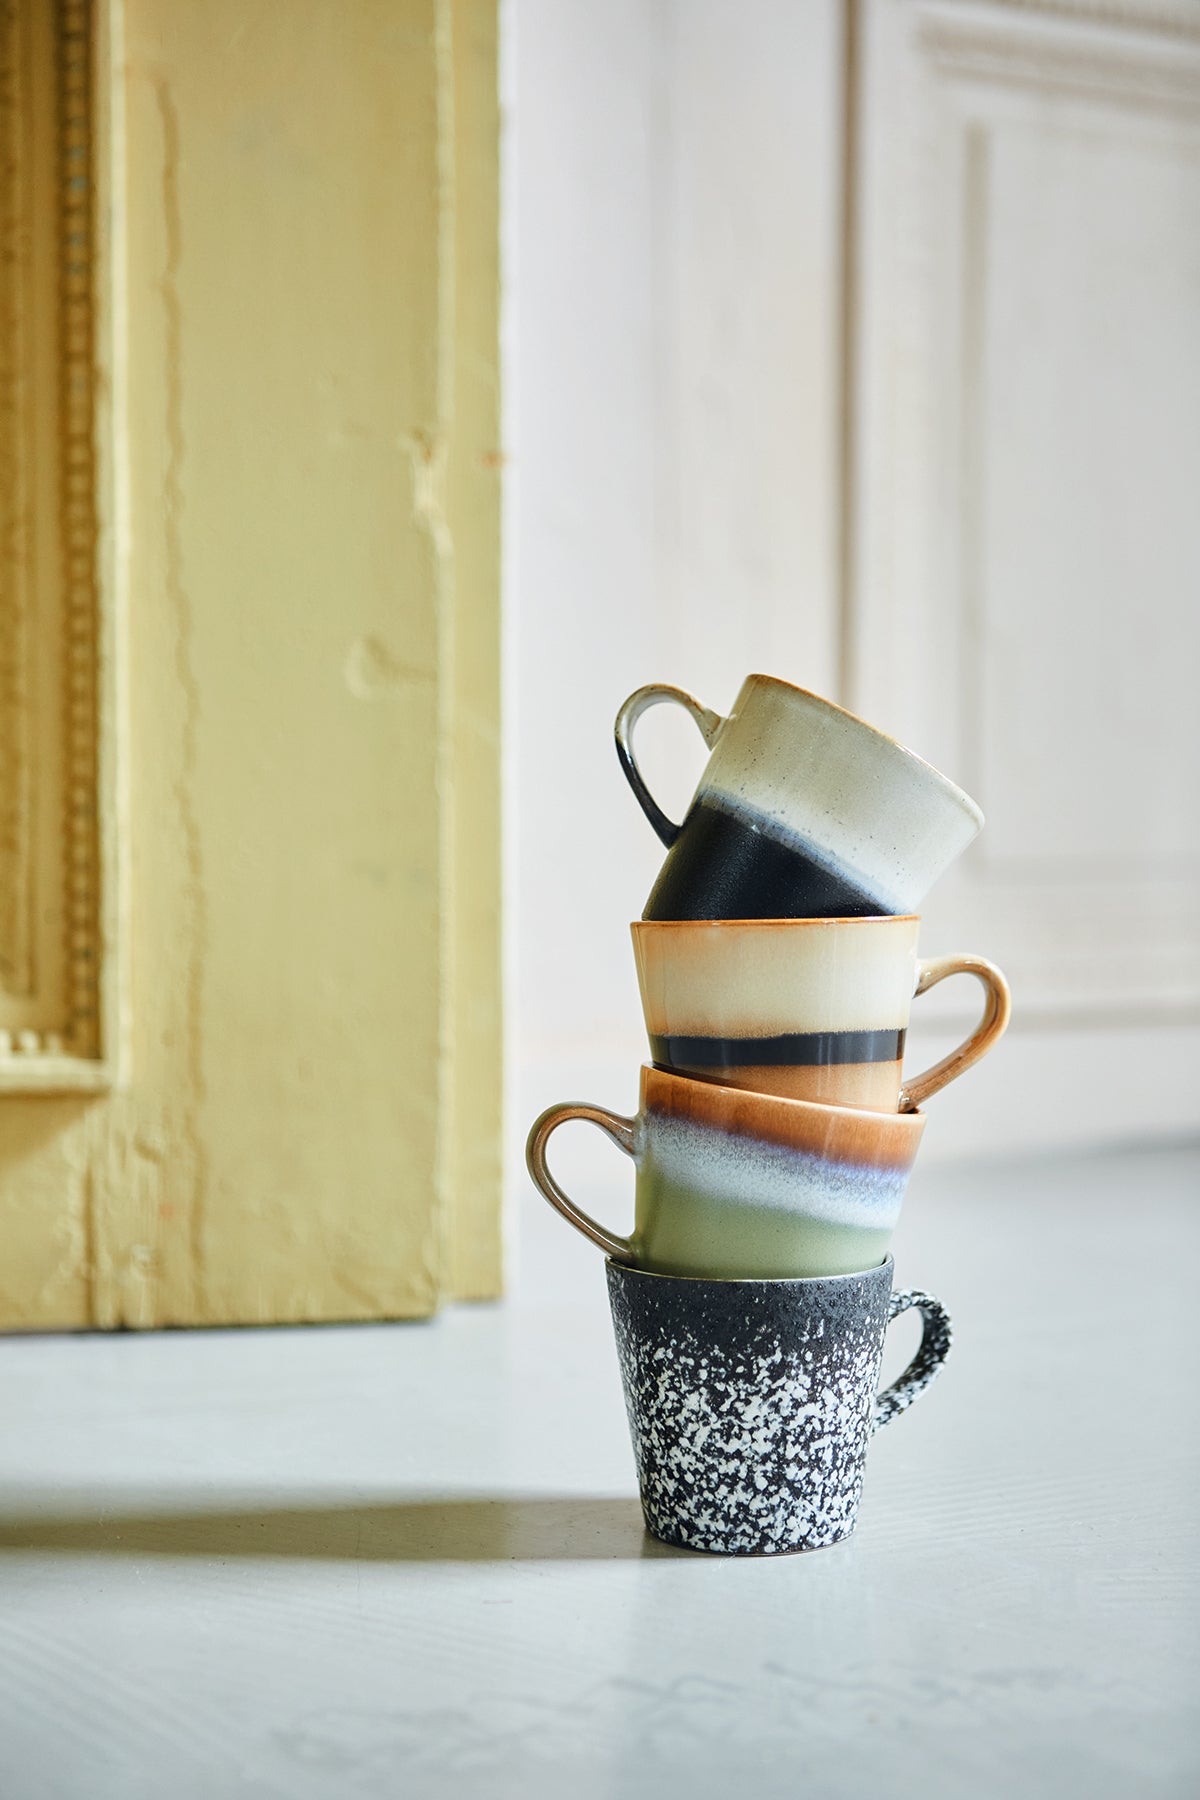 Tornado ceramic mug with handle